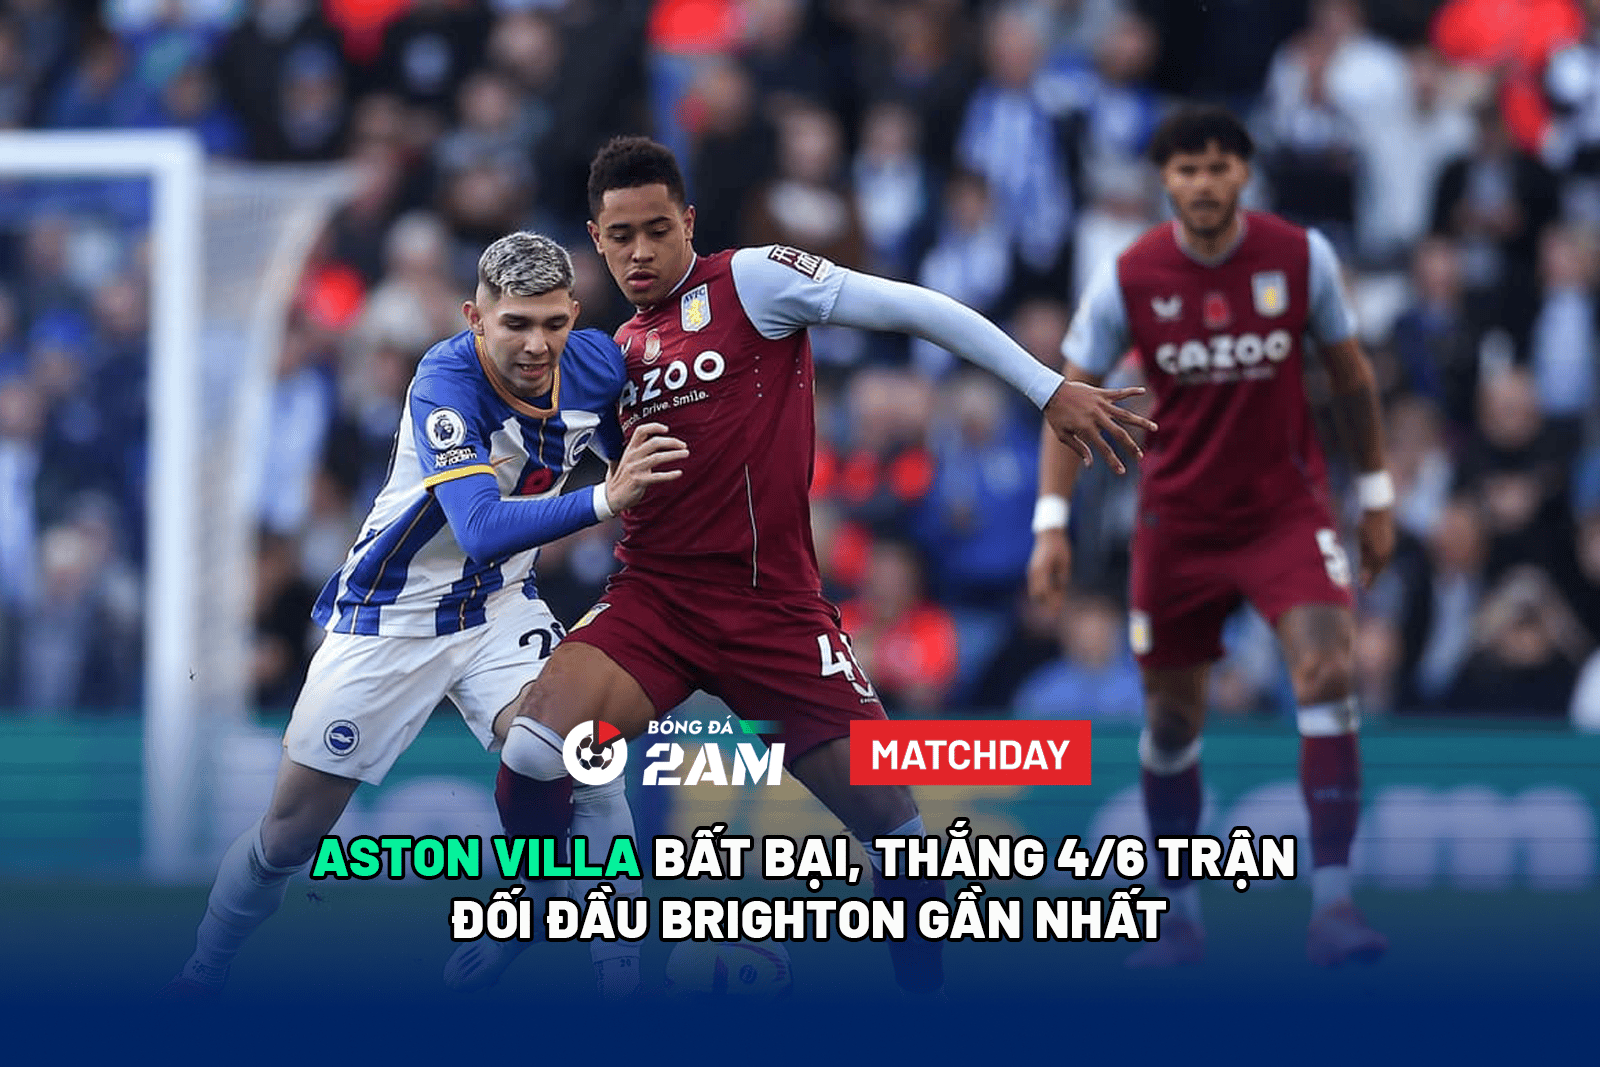 Aston Villa bất bại, thắng 4/6 trận đối đầu Brighton gần nhất. 